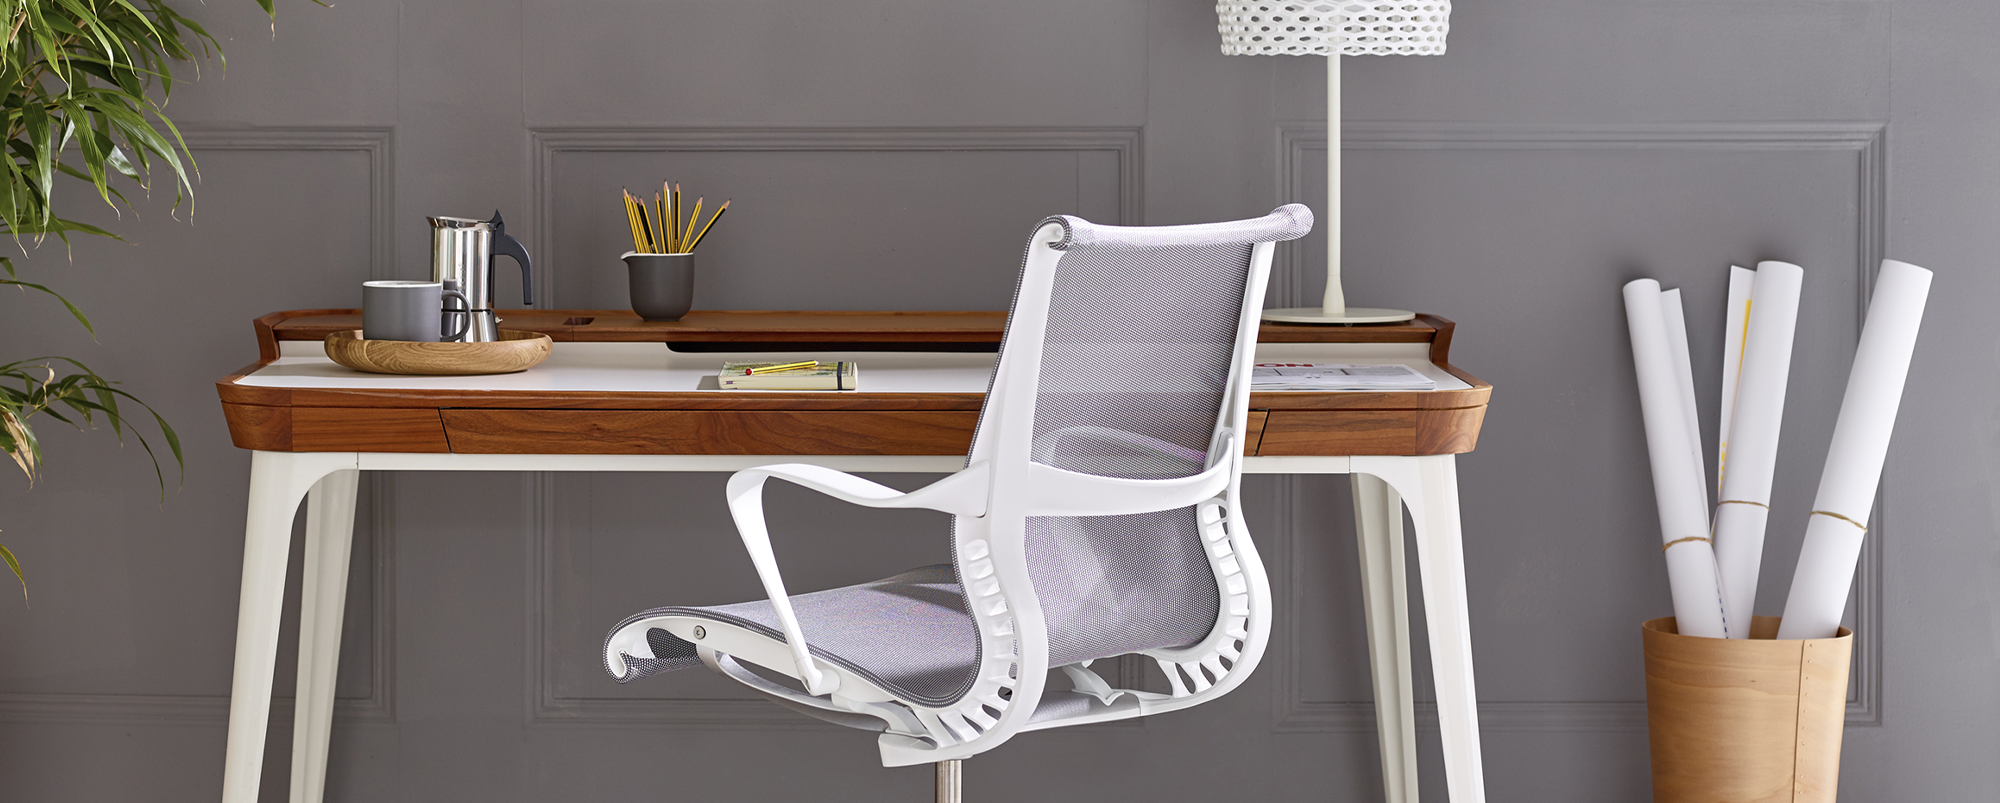 Setu Chair in a home office setting